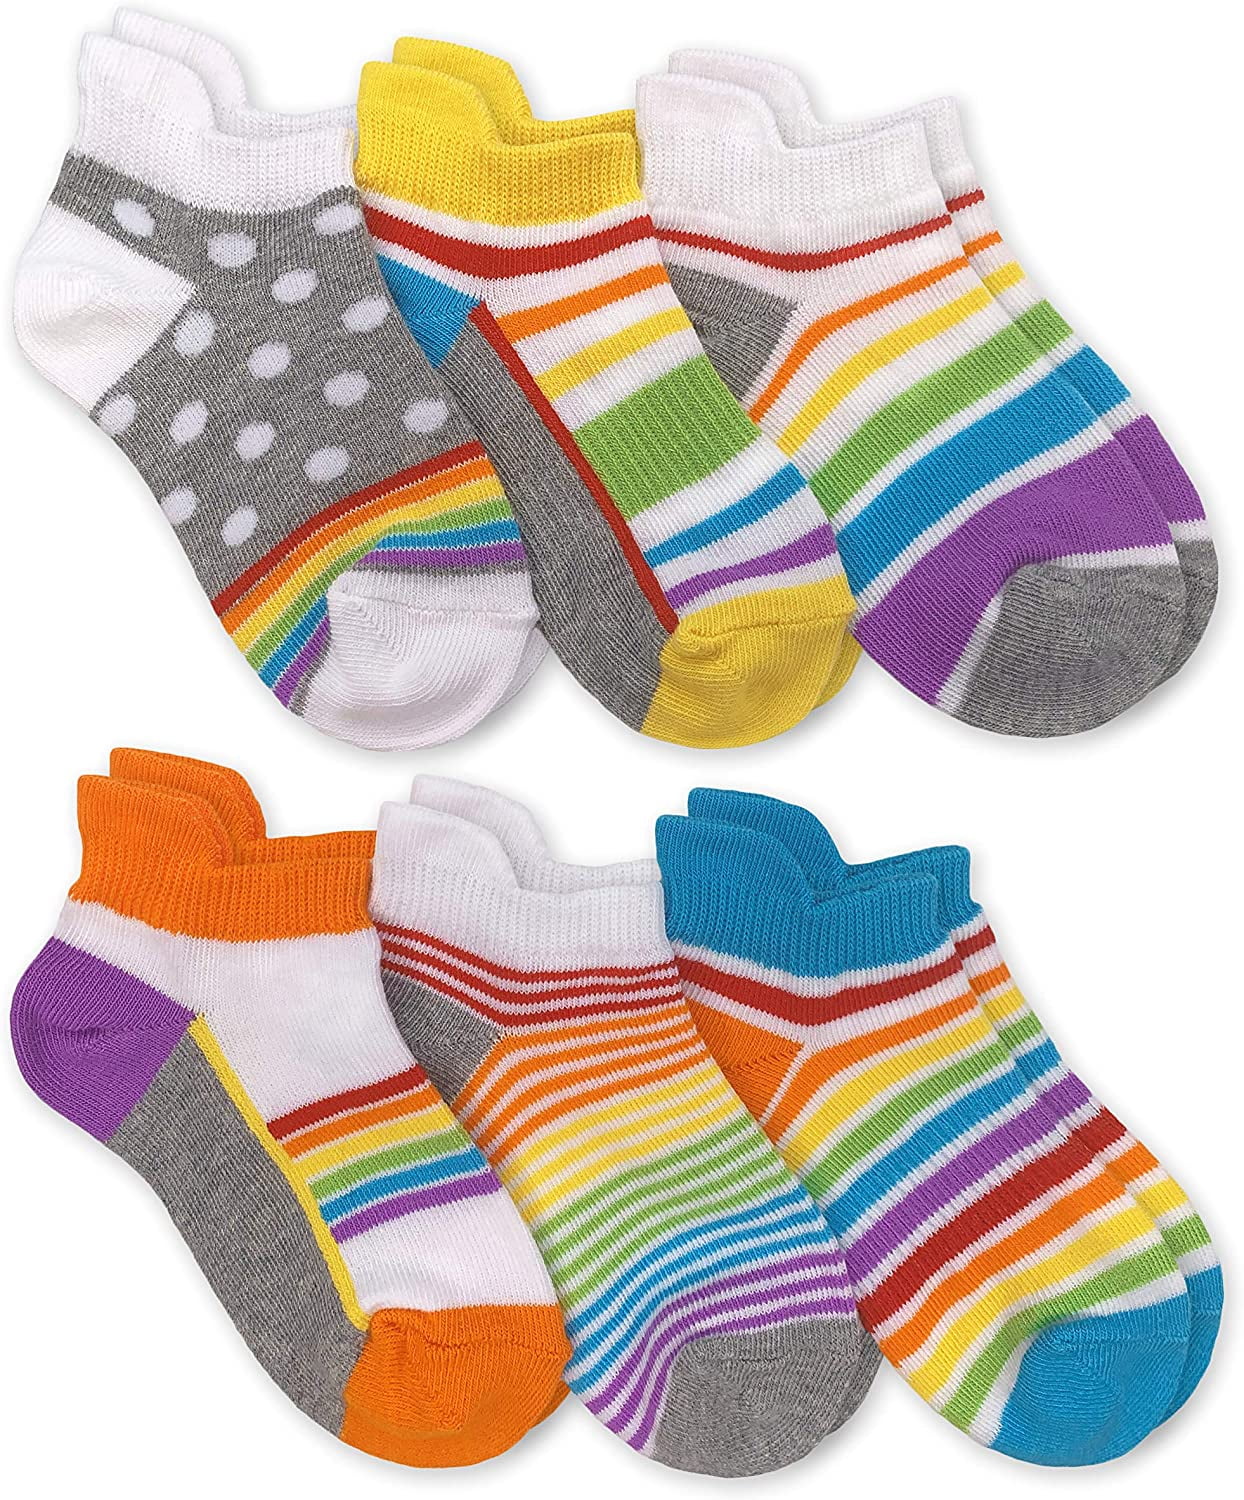 Jefferies Socks Girls Socks, 6 Pack Rainbow Pattern Sport Low Cut ...